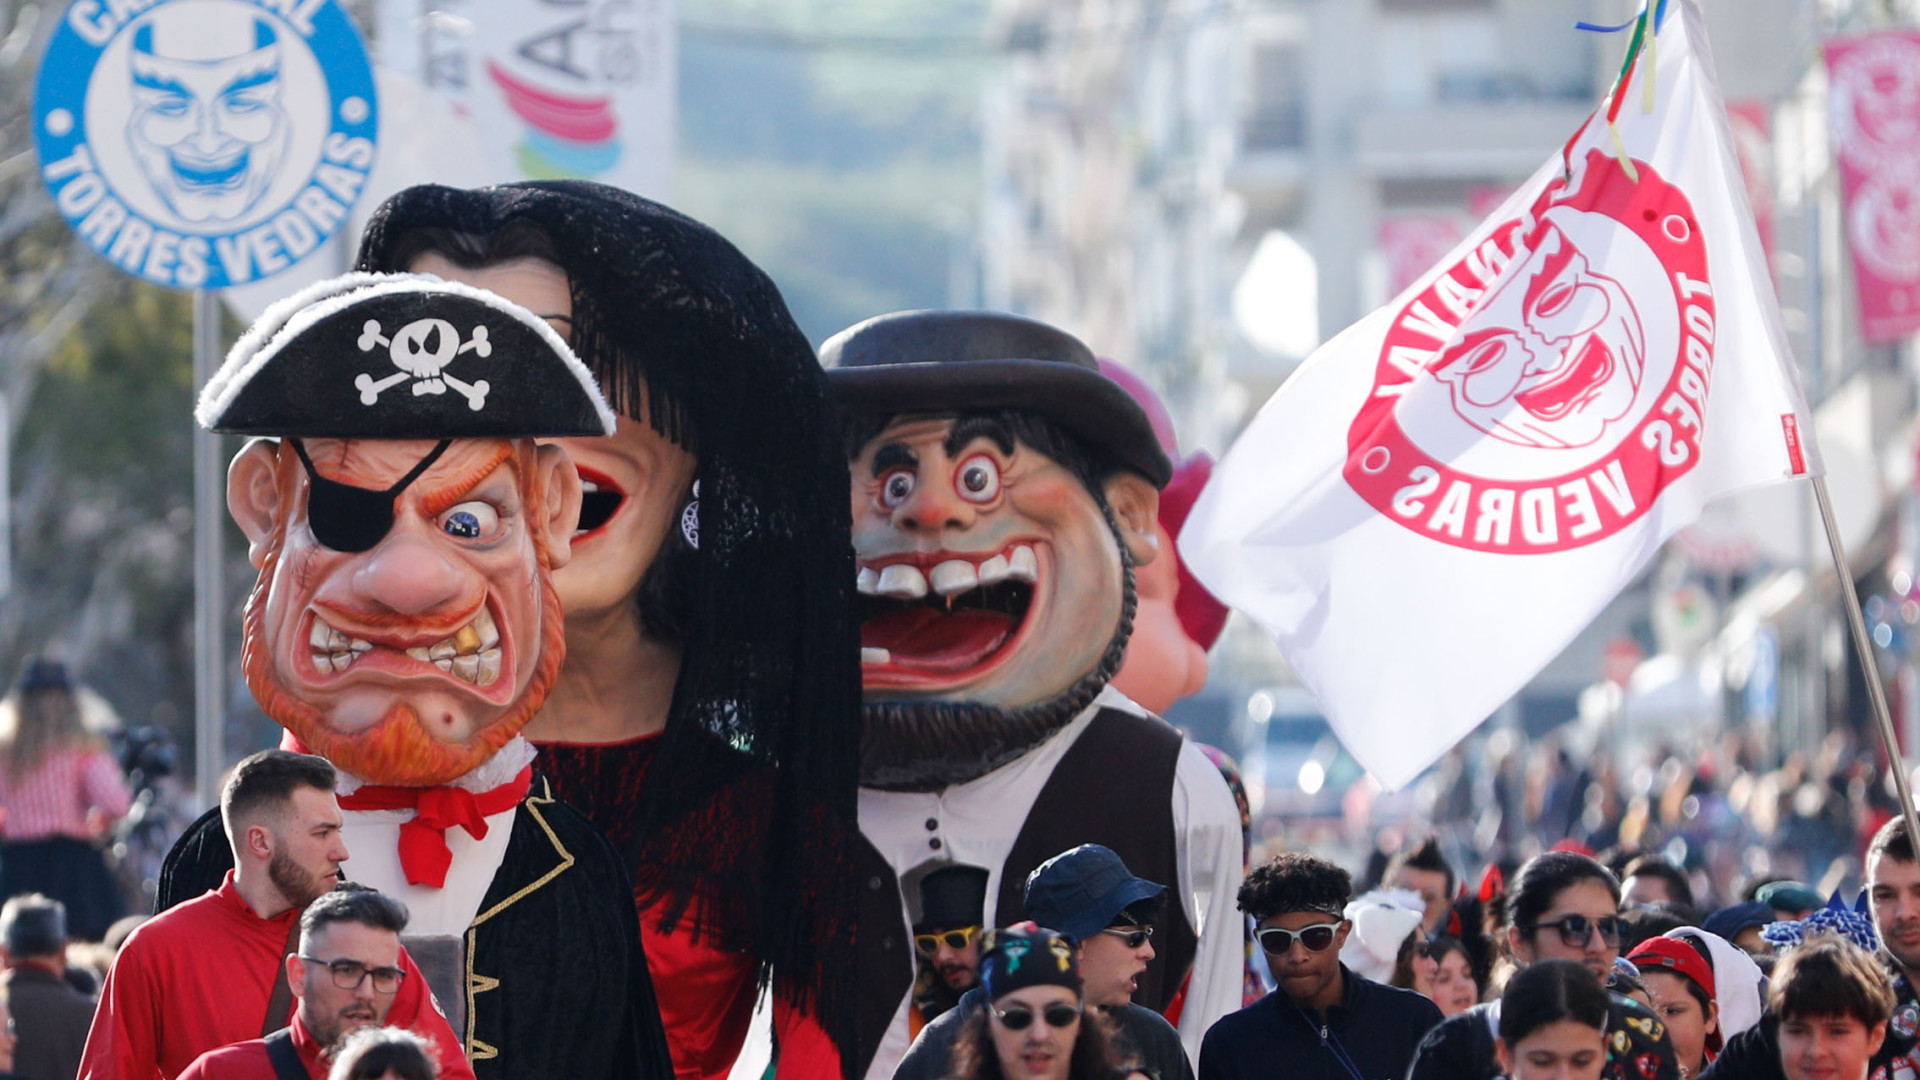 Portugal também cancela Carnaval devido à pandemia